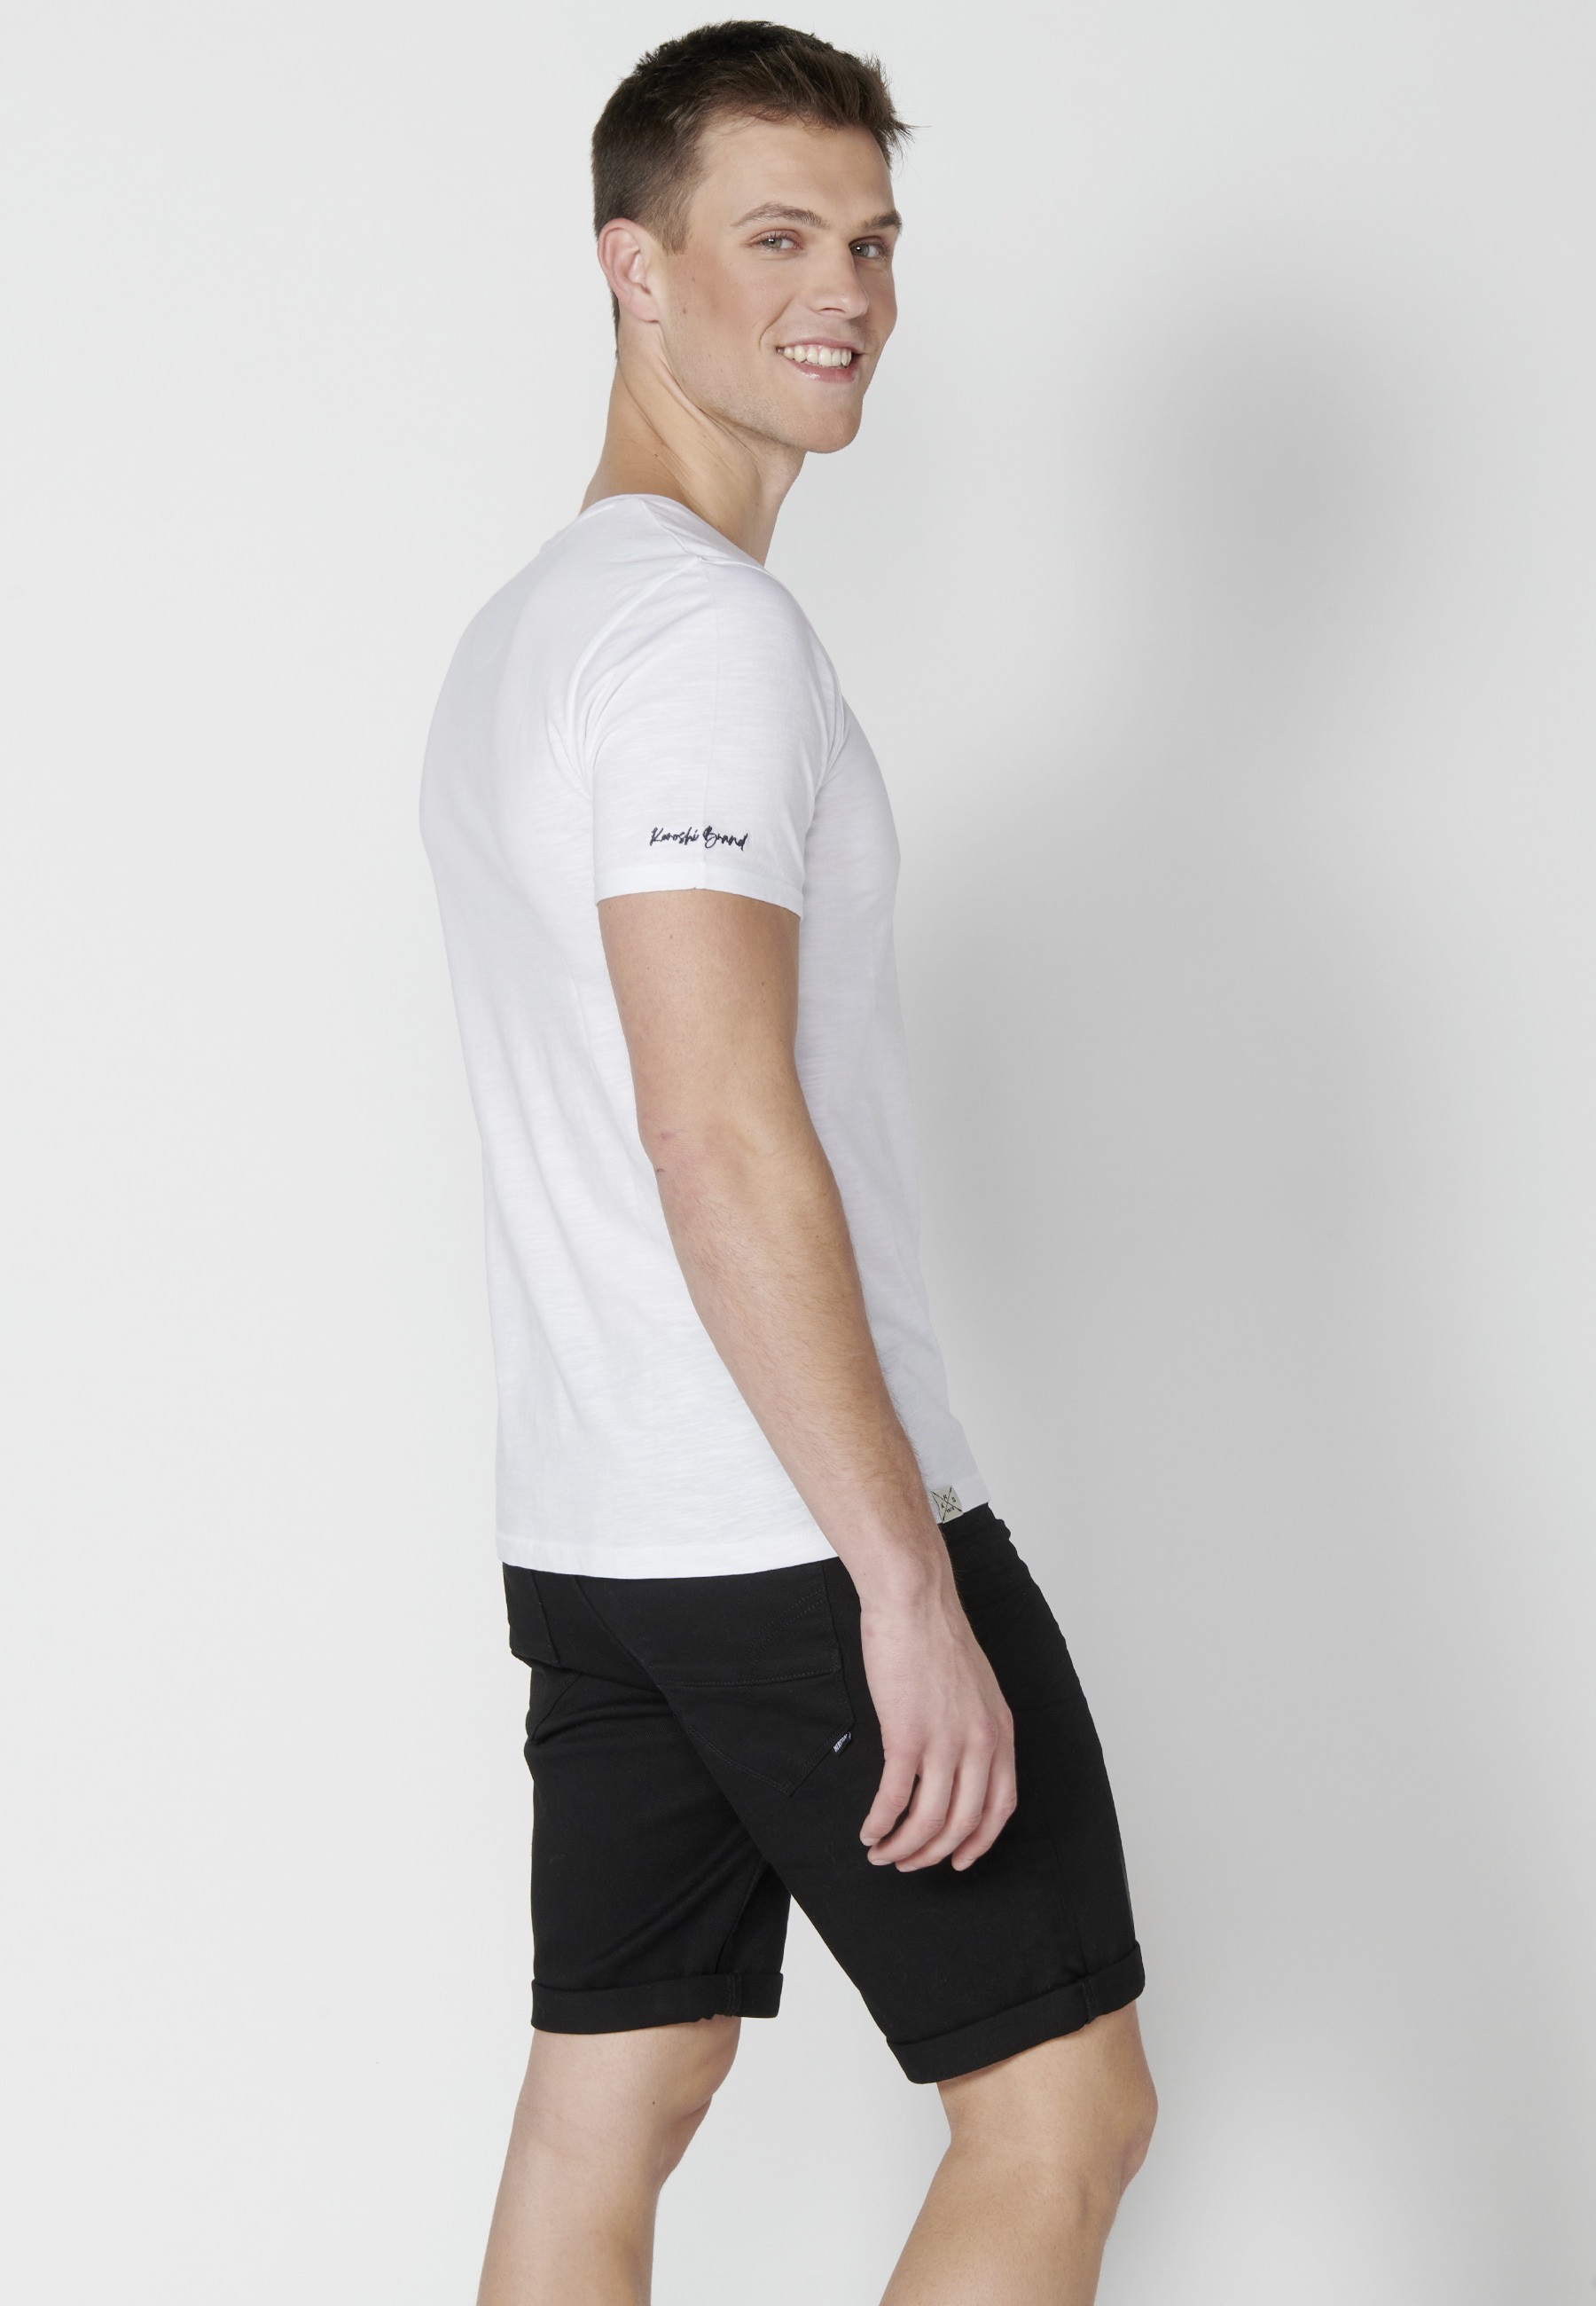 White cotton short-sleeved T-shirt for Men